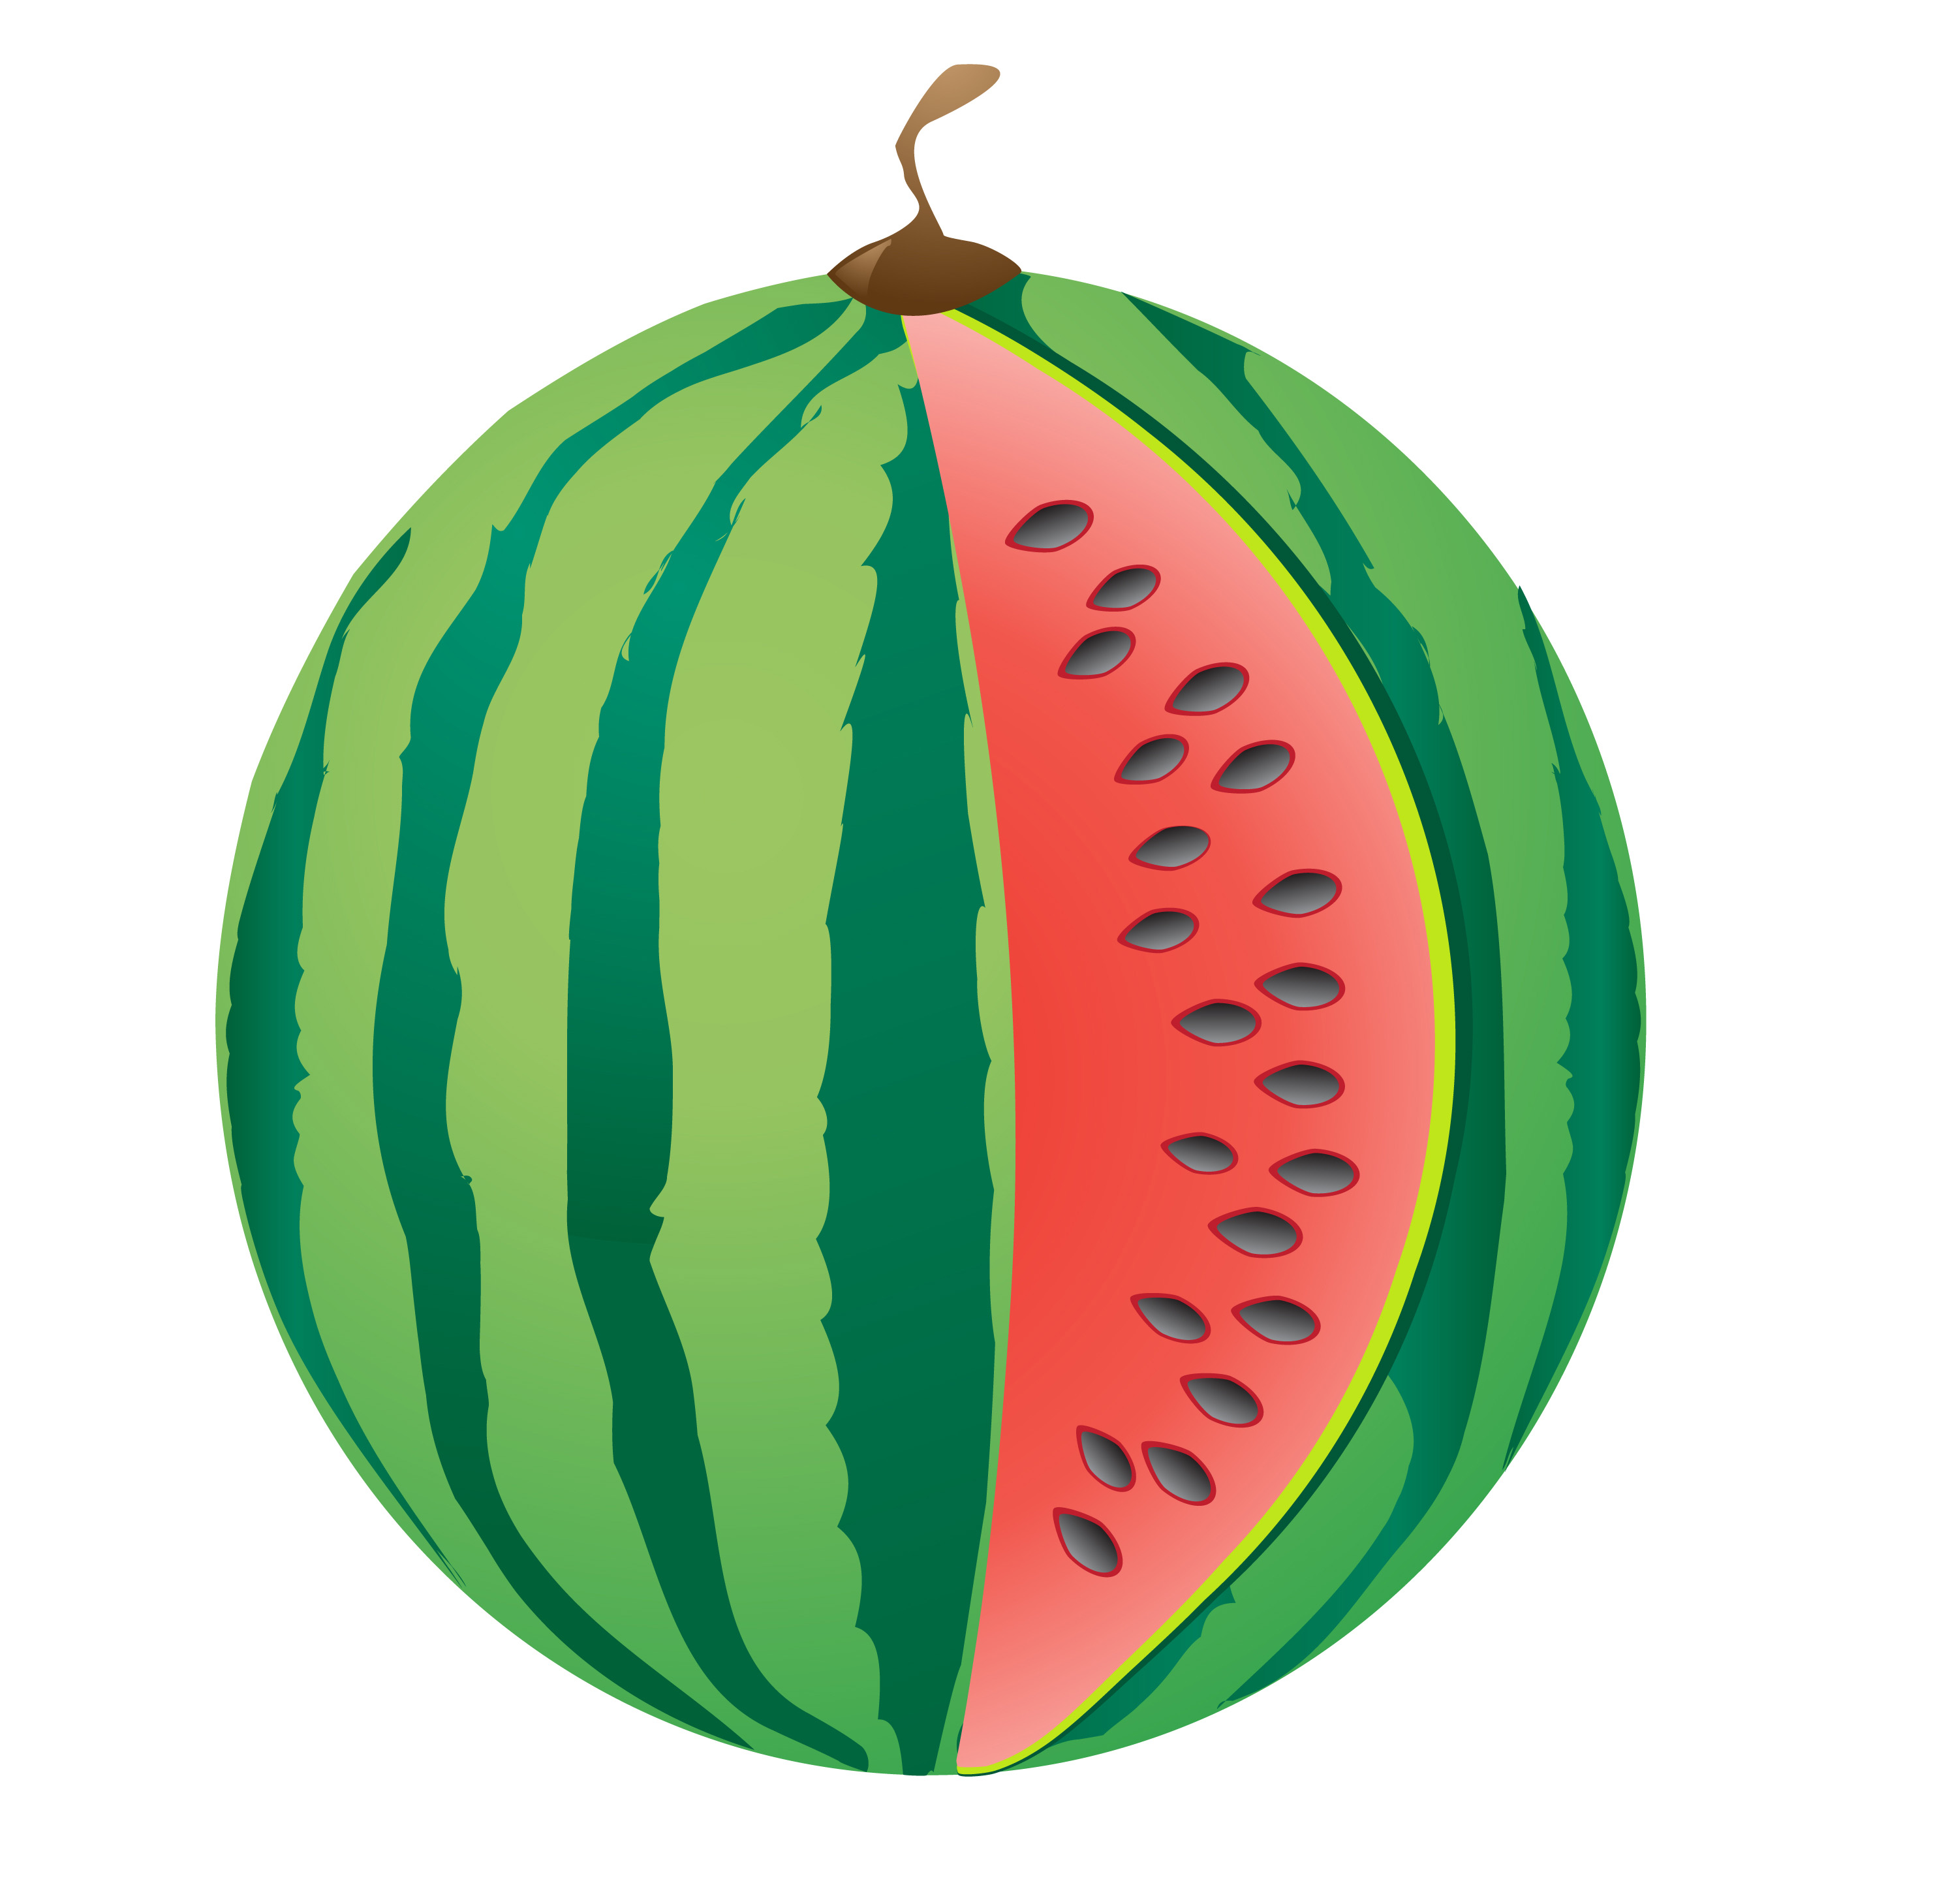 Download watermelon - Download Free Vectors, Clipart Graphics & Vector Art